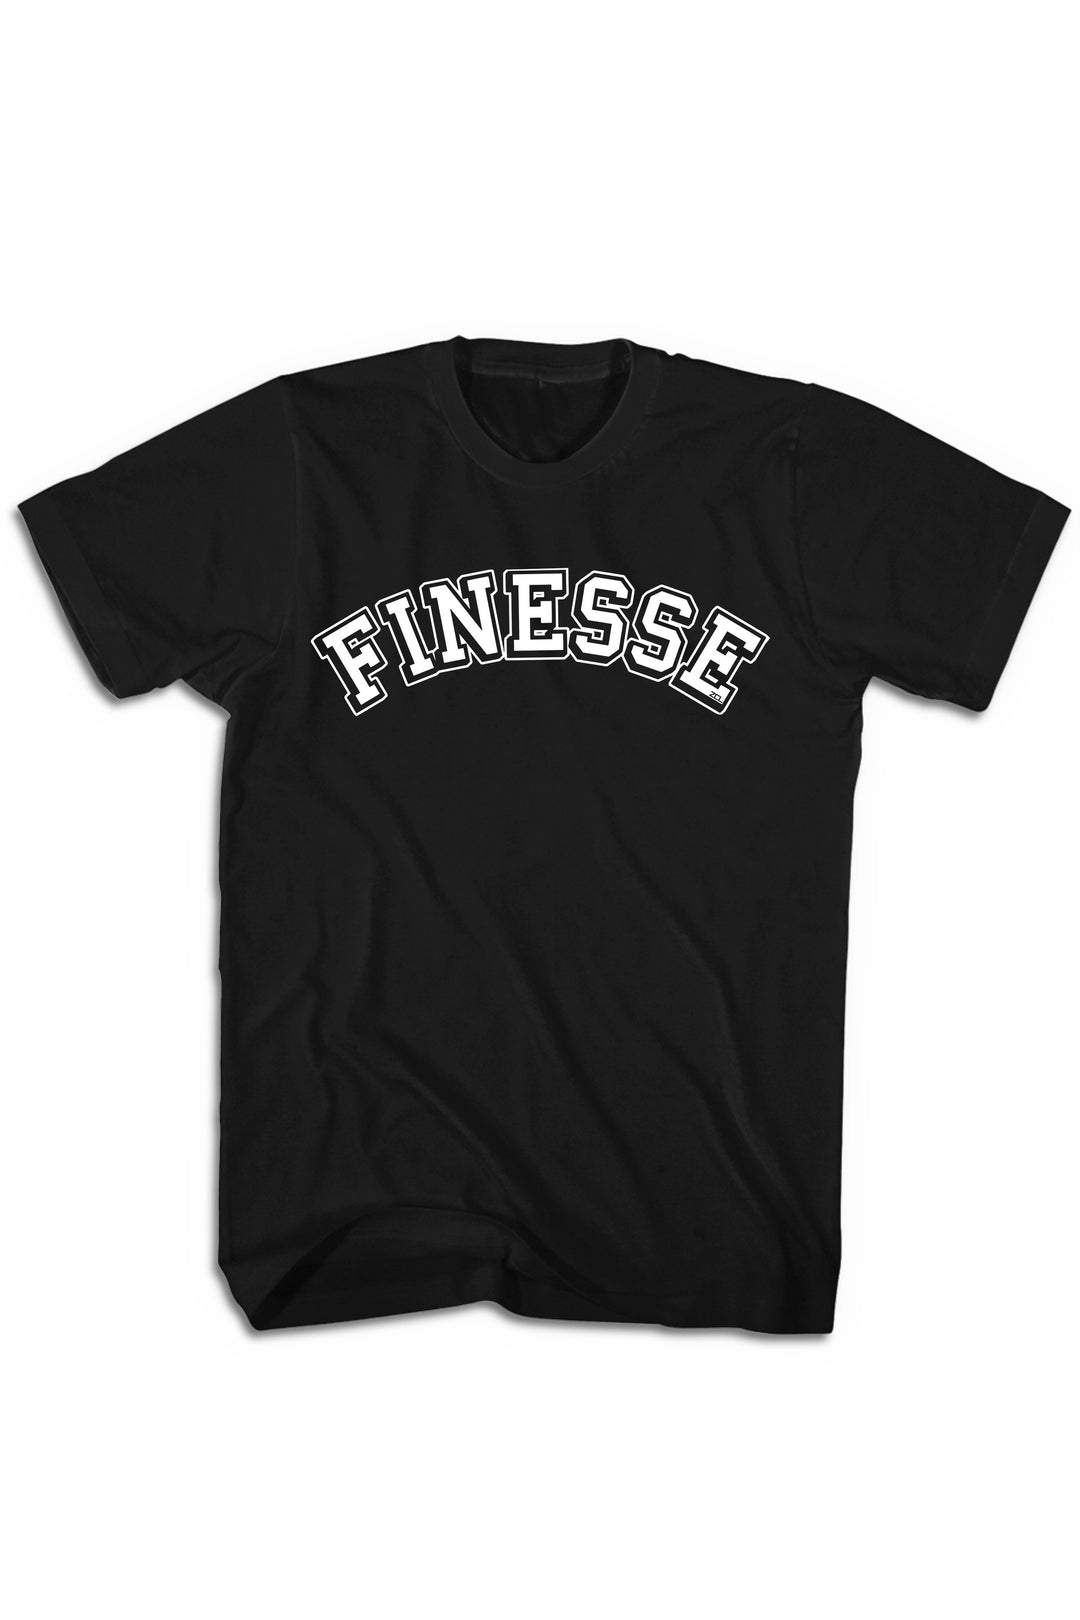 Finesse Tee (White Logo) - Zamage